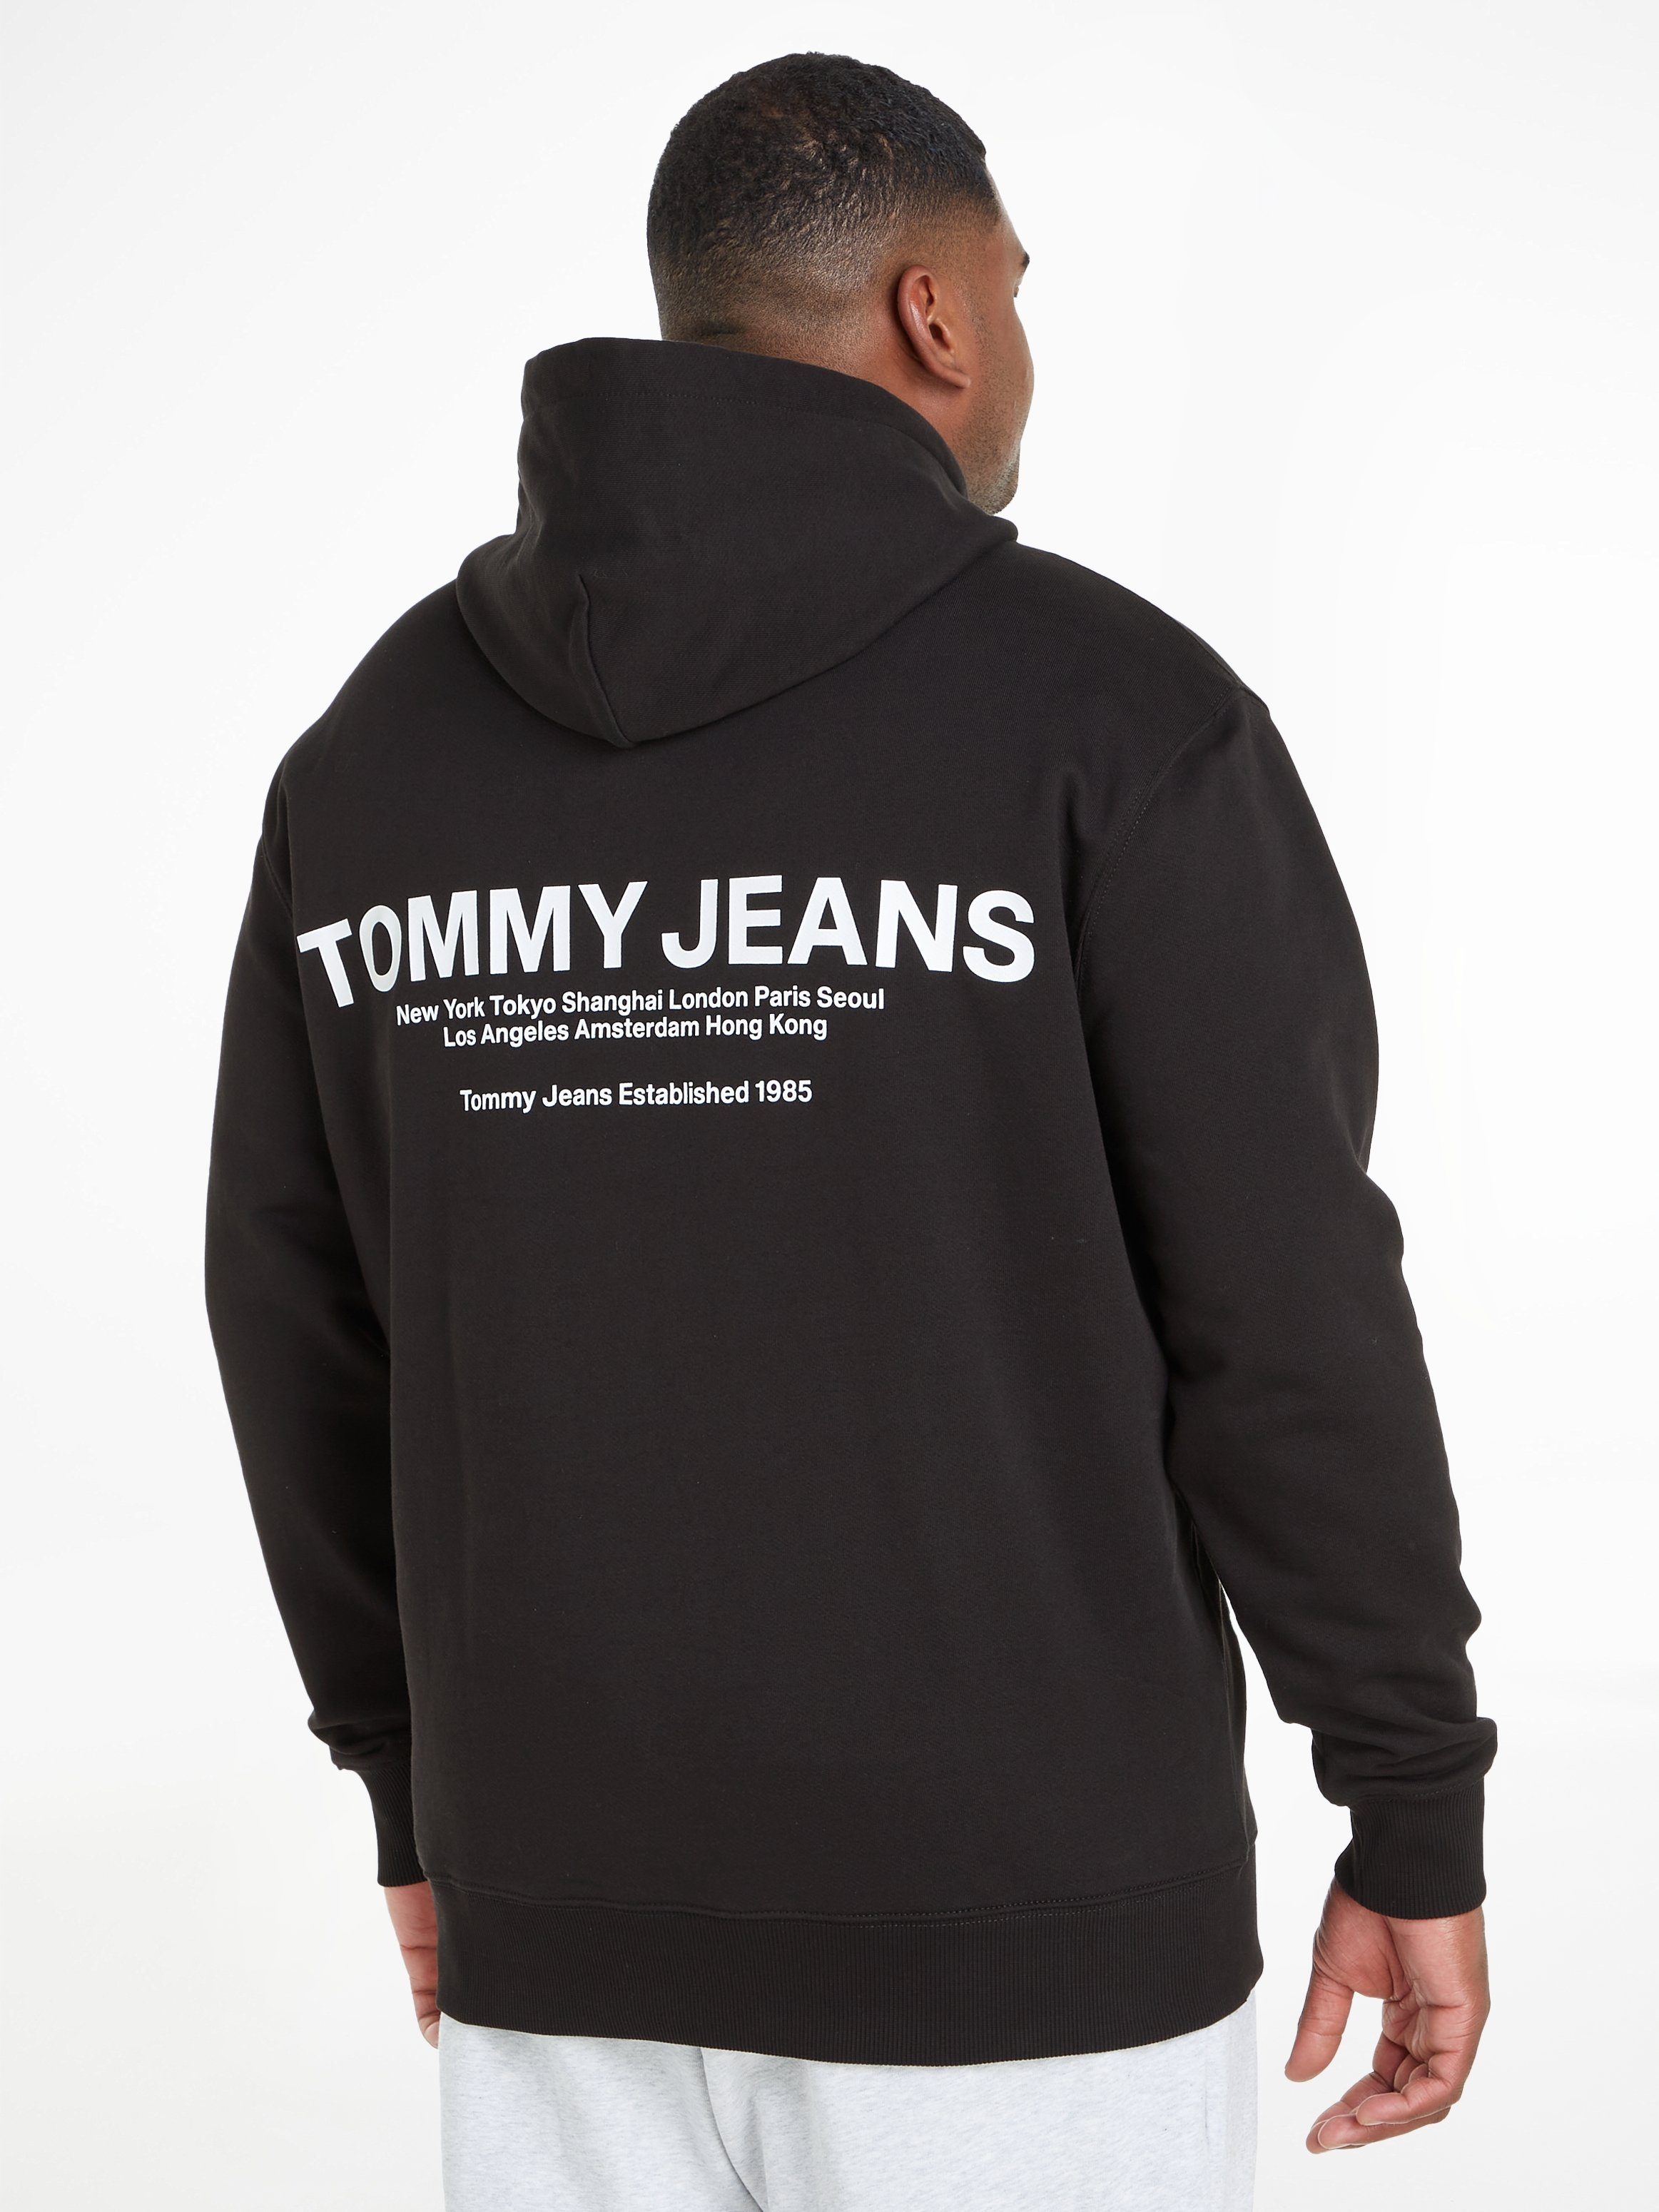 REG TJM ENTRY HOOD PLUS Black Tommy Hoodie Jeans GRAPHIC Plus